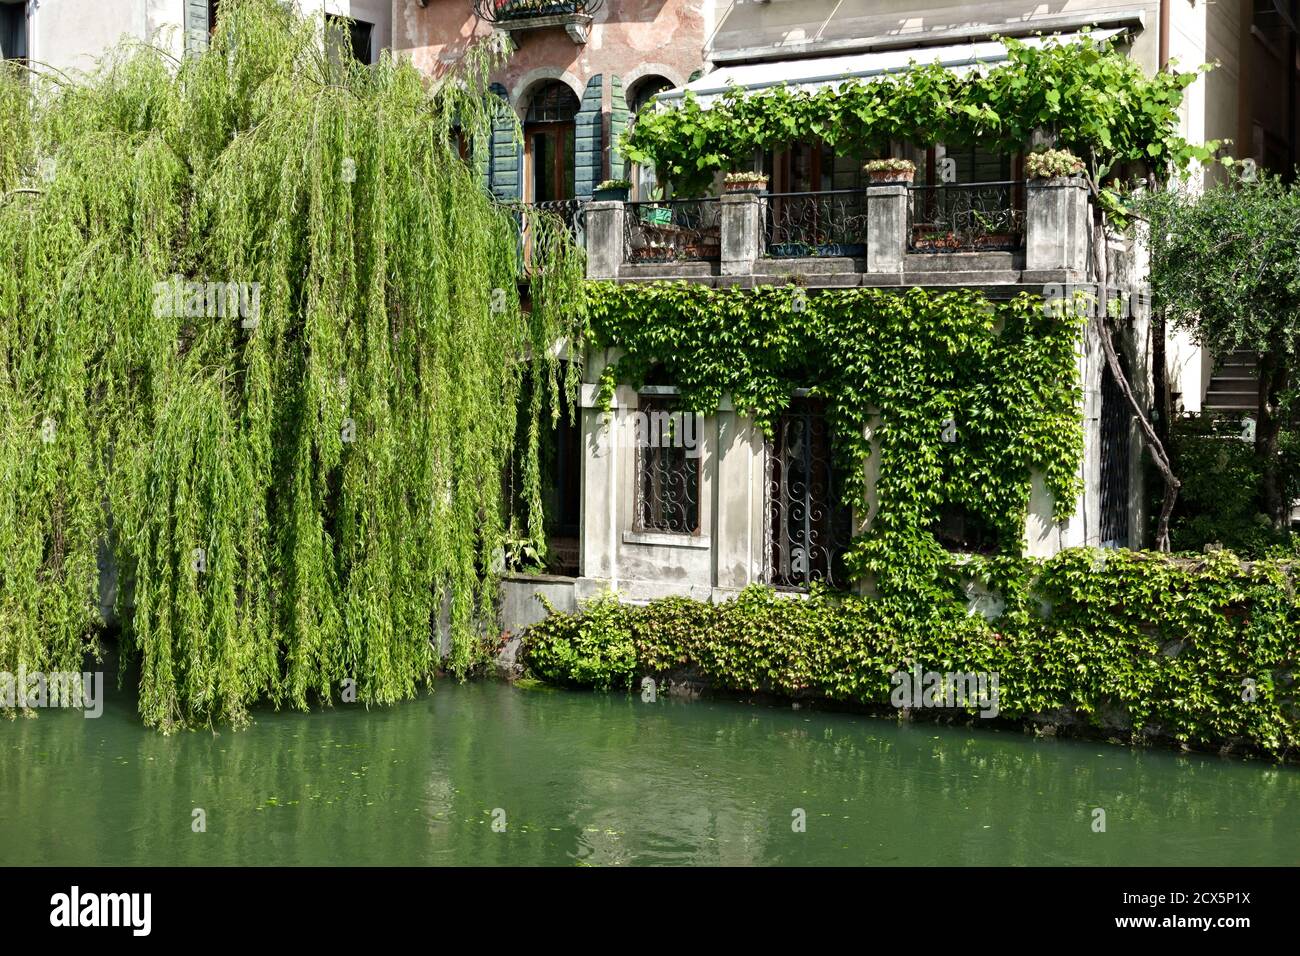 Vislumbre de casas típicas venecianas a lo largo del río Sile, Riviera Santa Margherita. Sauce llorón. Treviso, Véneto, Italia, Europa. Foto de stock